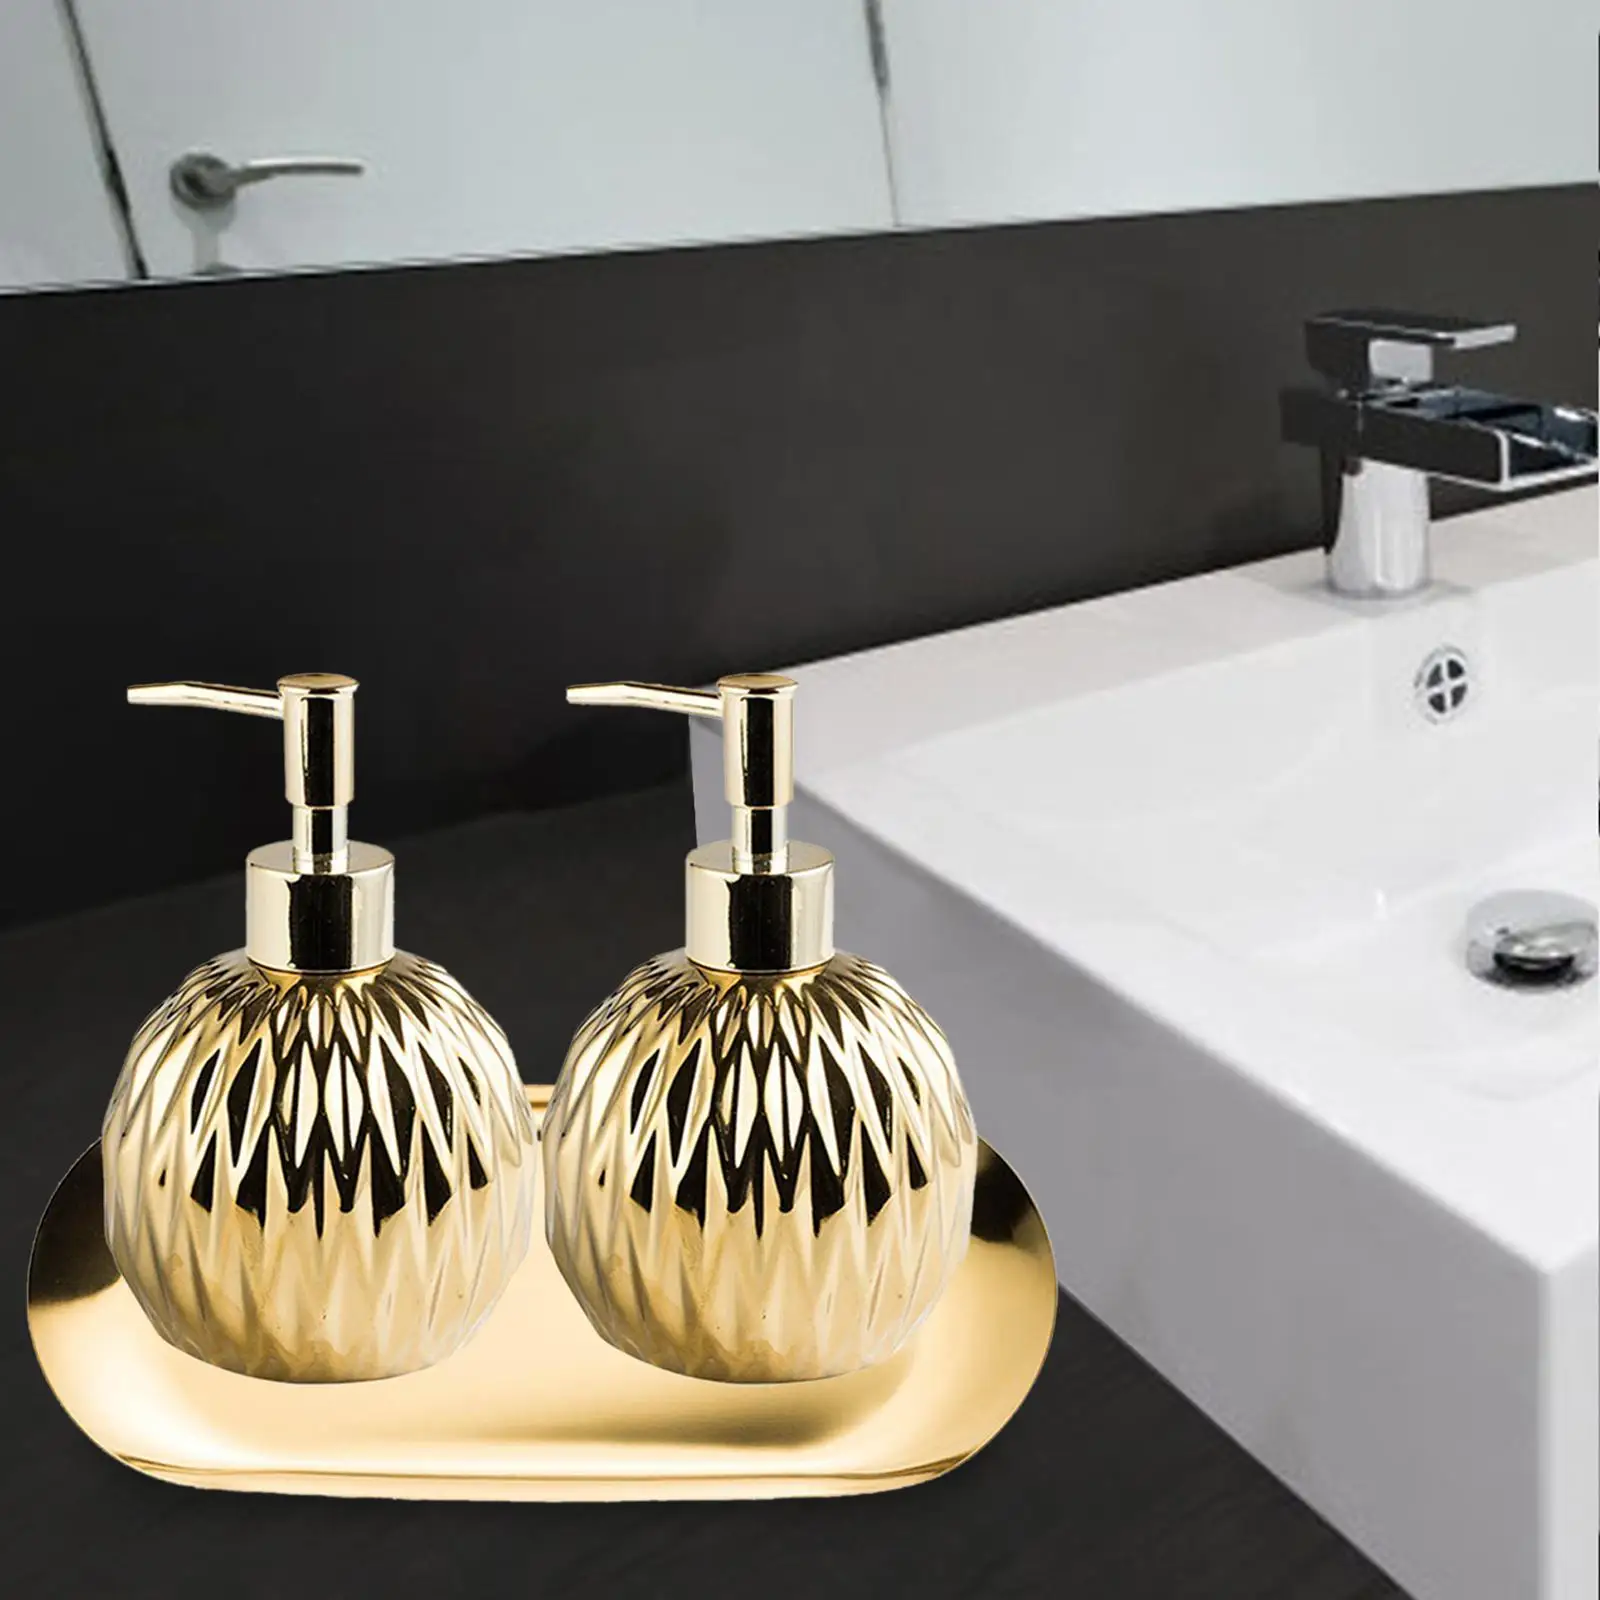  Soap Dispenser Massage Oils Body Wash for Restroom Hotel Home